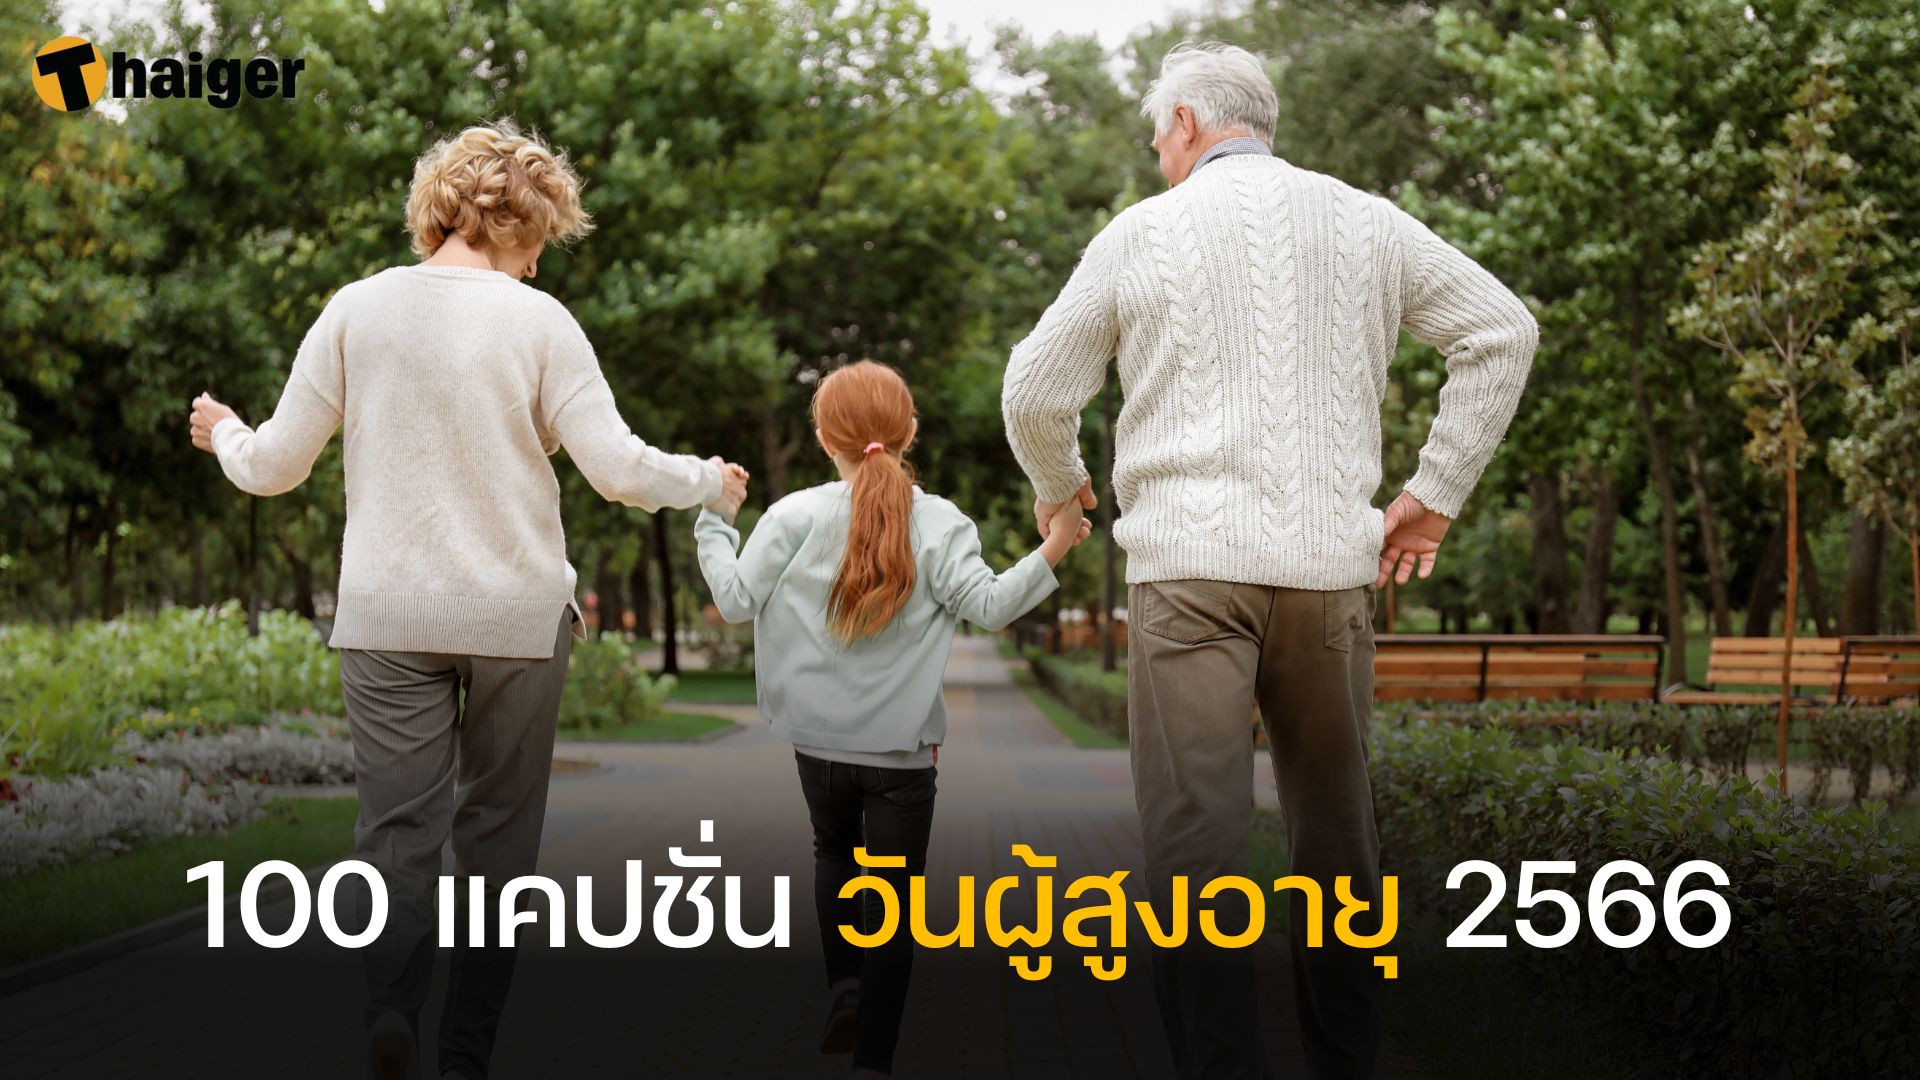 มัดรวม แคปชั่นวันผู้สูงอายุ 2566 เทศกาลดี ๆ ของคนรักครอบครัว | Thaiger  ข่าวไทย